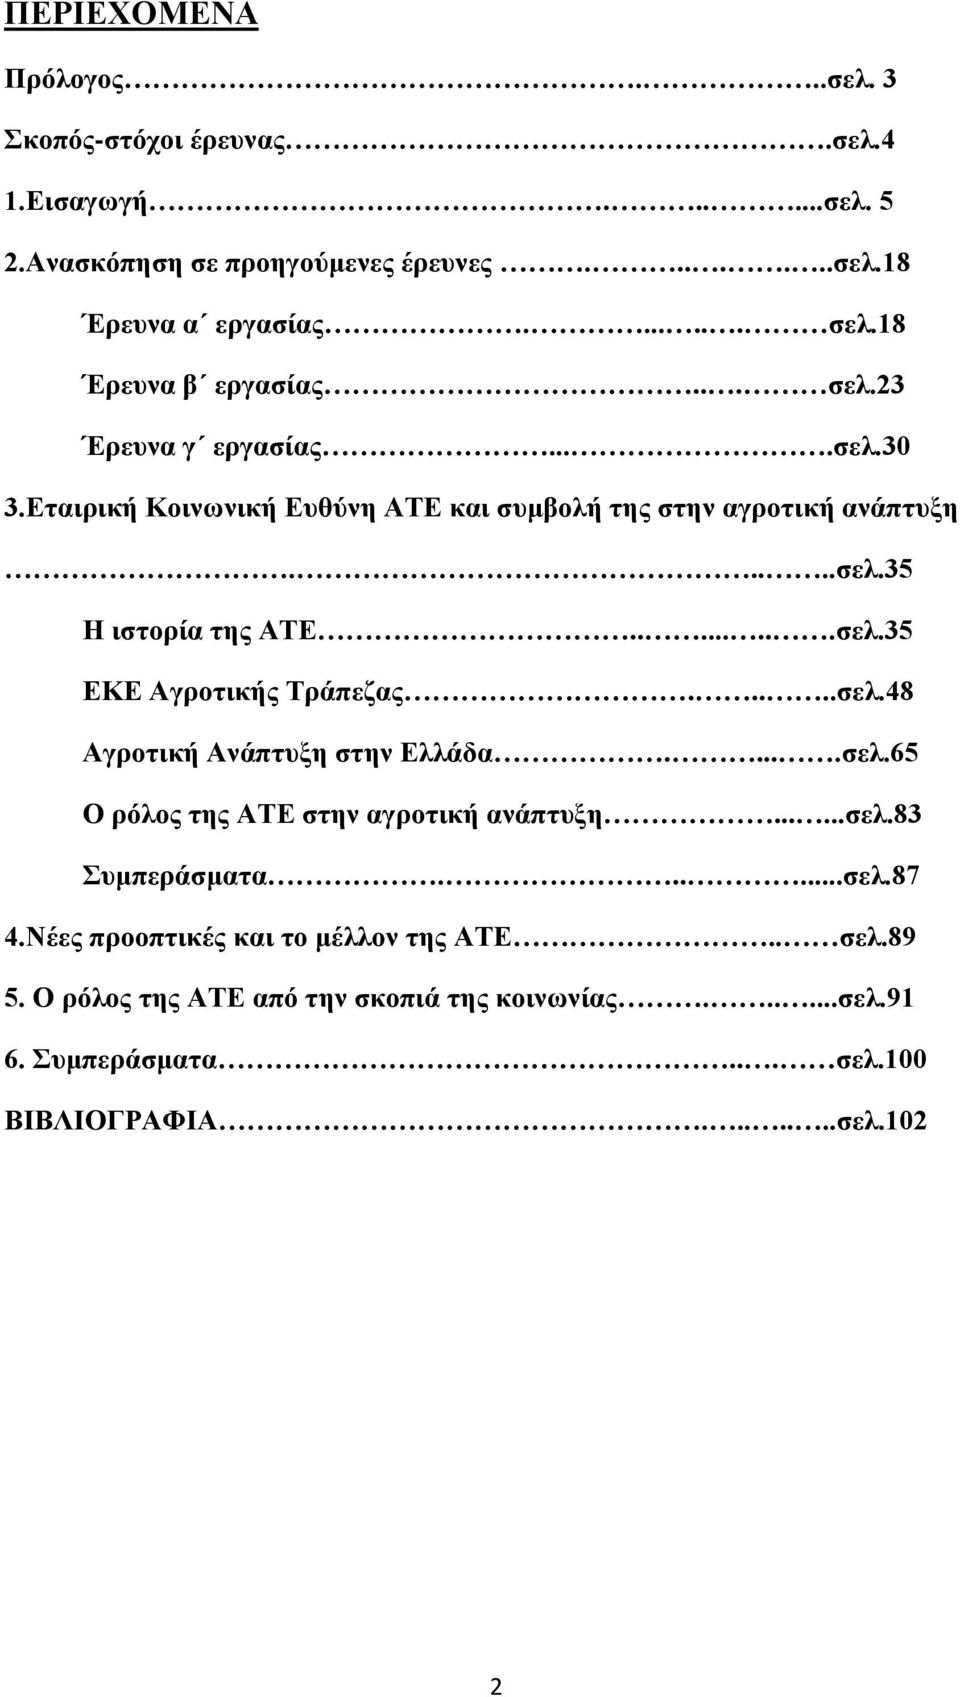 .......σελ.35 ΕΚΕ Αγροτικής Τράπεζας.....σελ.48 Αγροτική Ανάπτυξη στην Ελλάδα.....σελ.65 Ο ρόλος της ΑΤΕ στην αγροτική ανάπτυξη......σελ.83 Συμπεράσματα......σελ.87 4.